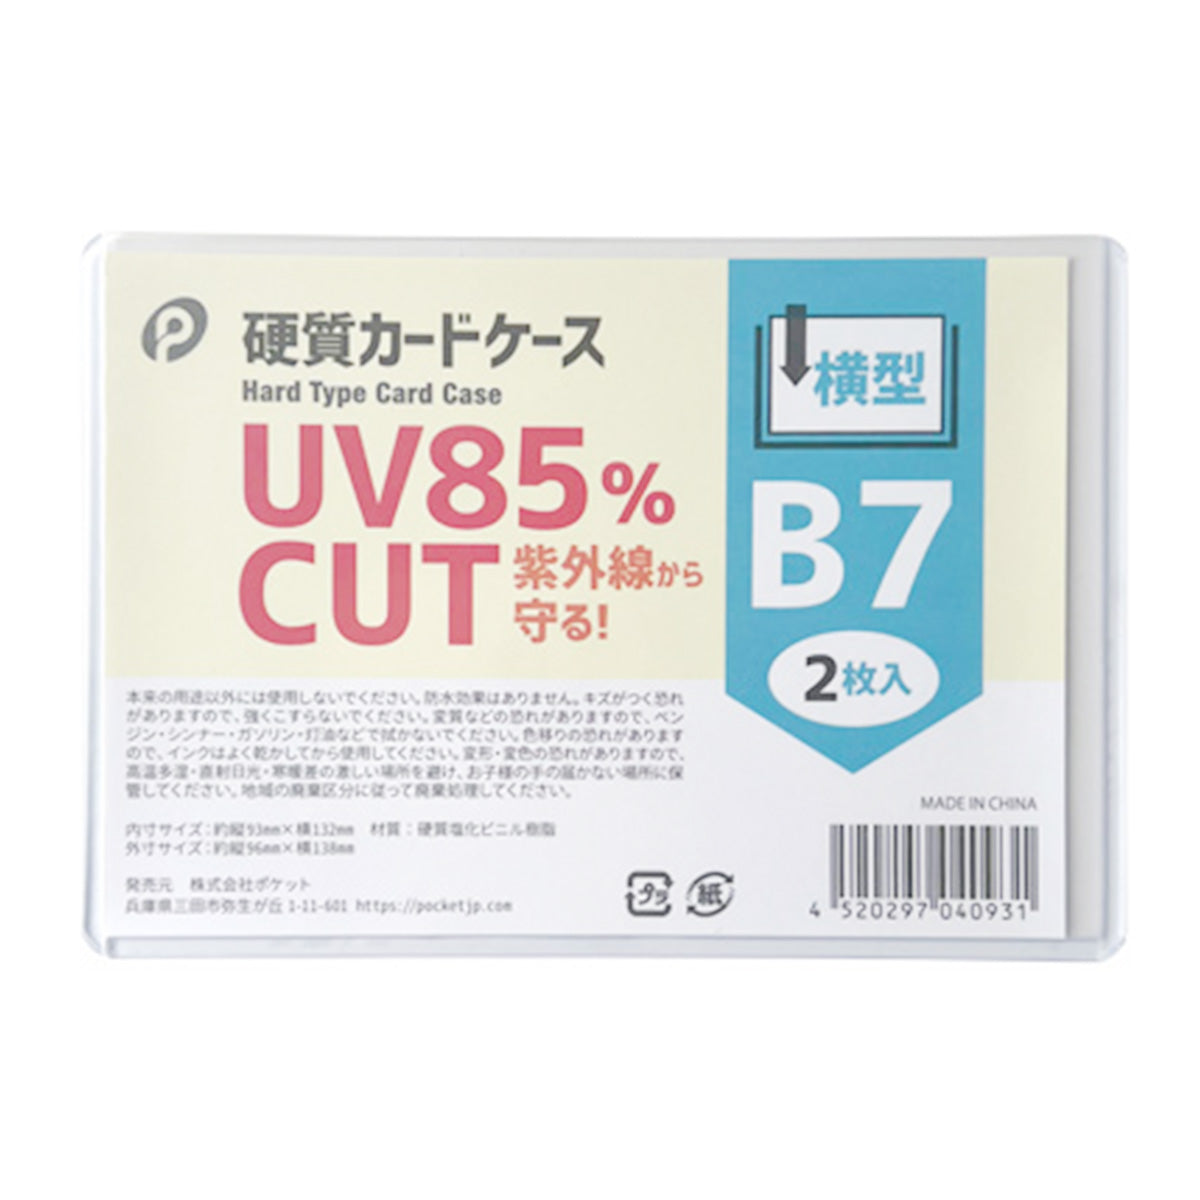 UVカット硬質カードケース横型B7/2枚入  0894/352127